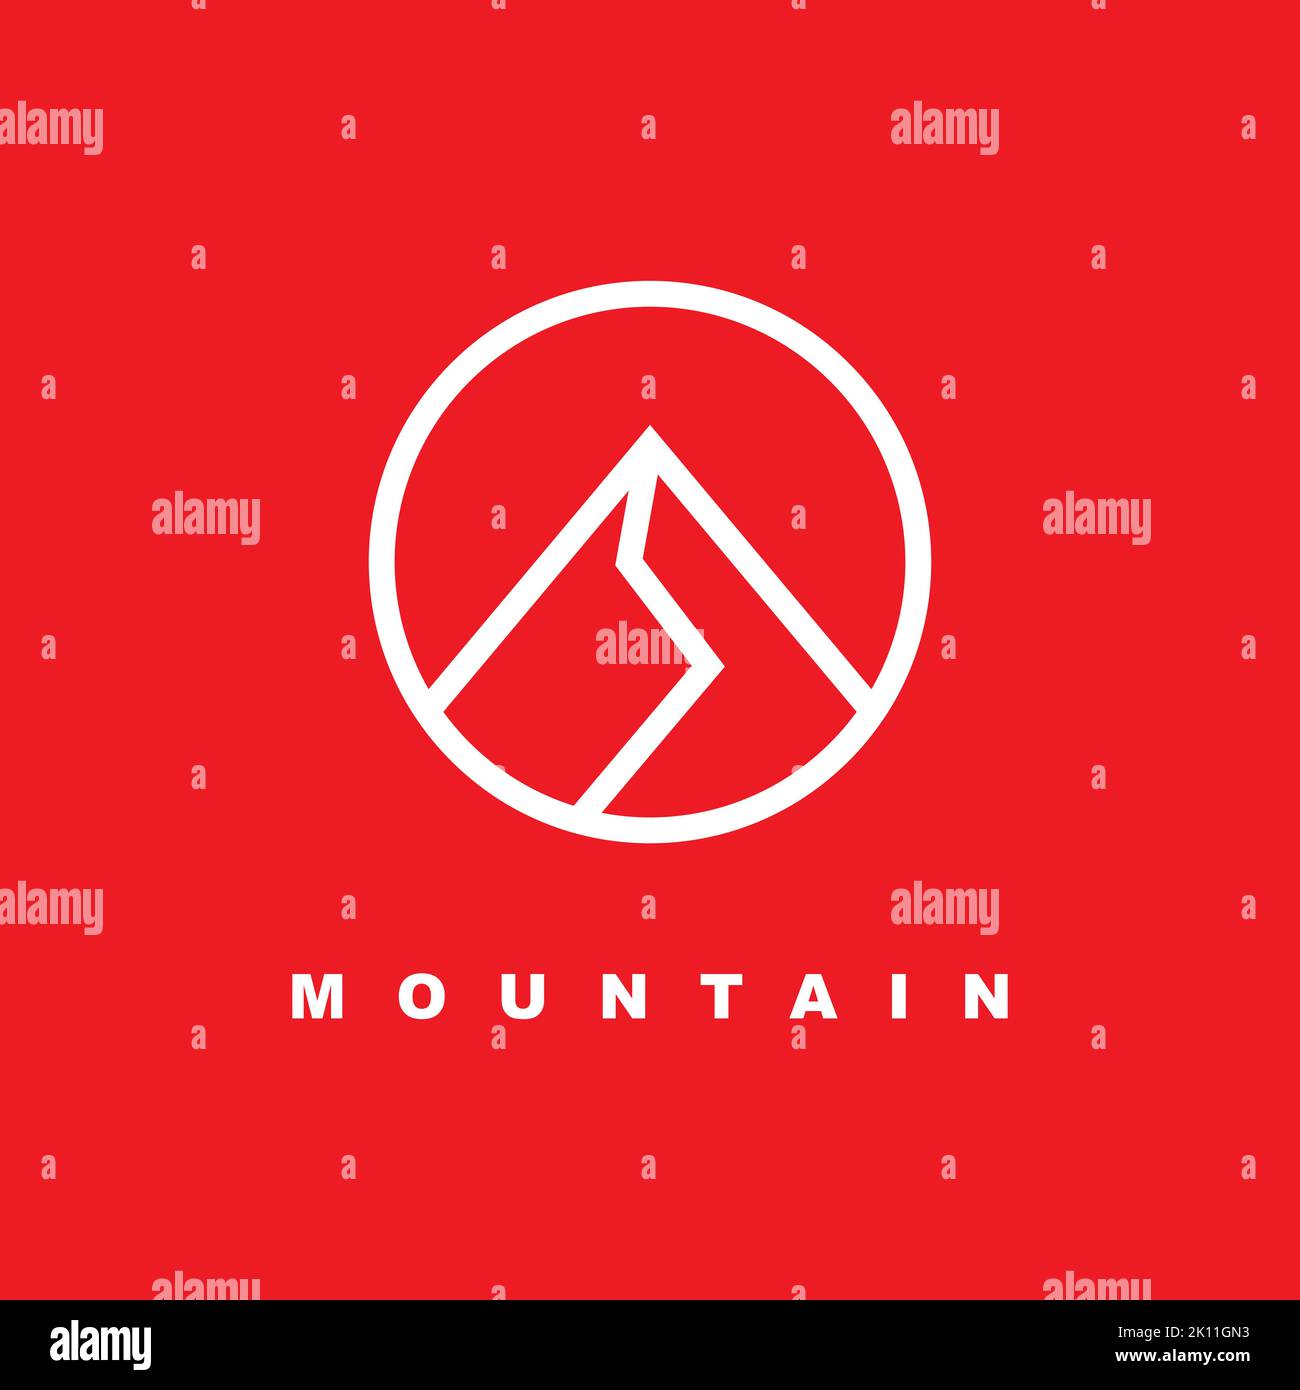 Mountain logo design template. creative stones icon vector. Mountain logo inspiration Stock Vector